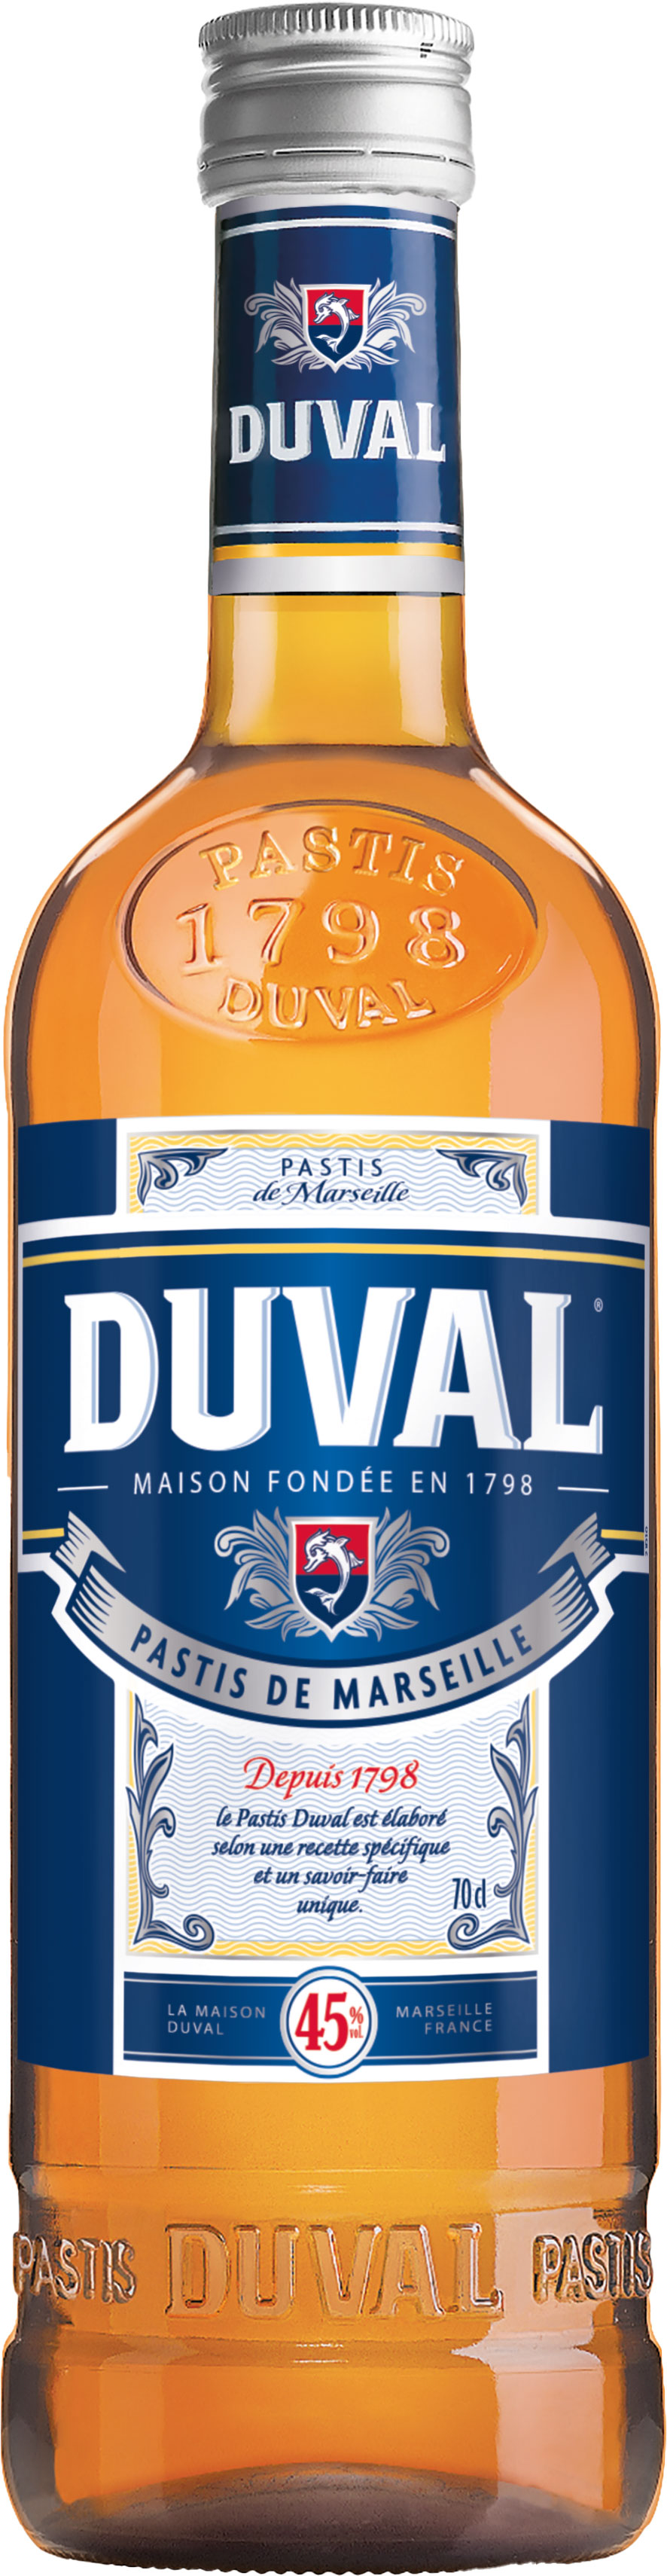 Schneekloth de 0,7 Marseille Pastis 45% Duval l vol. |